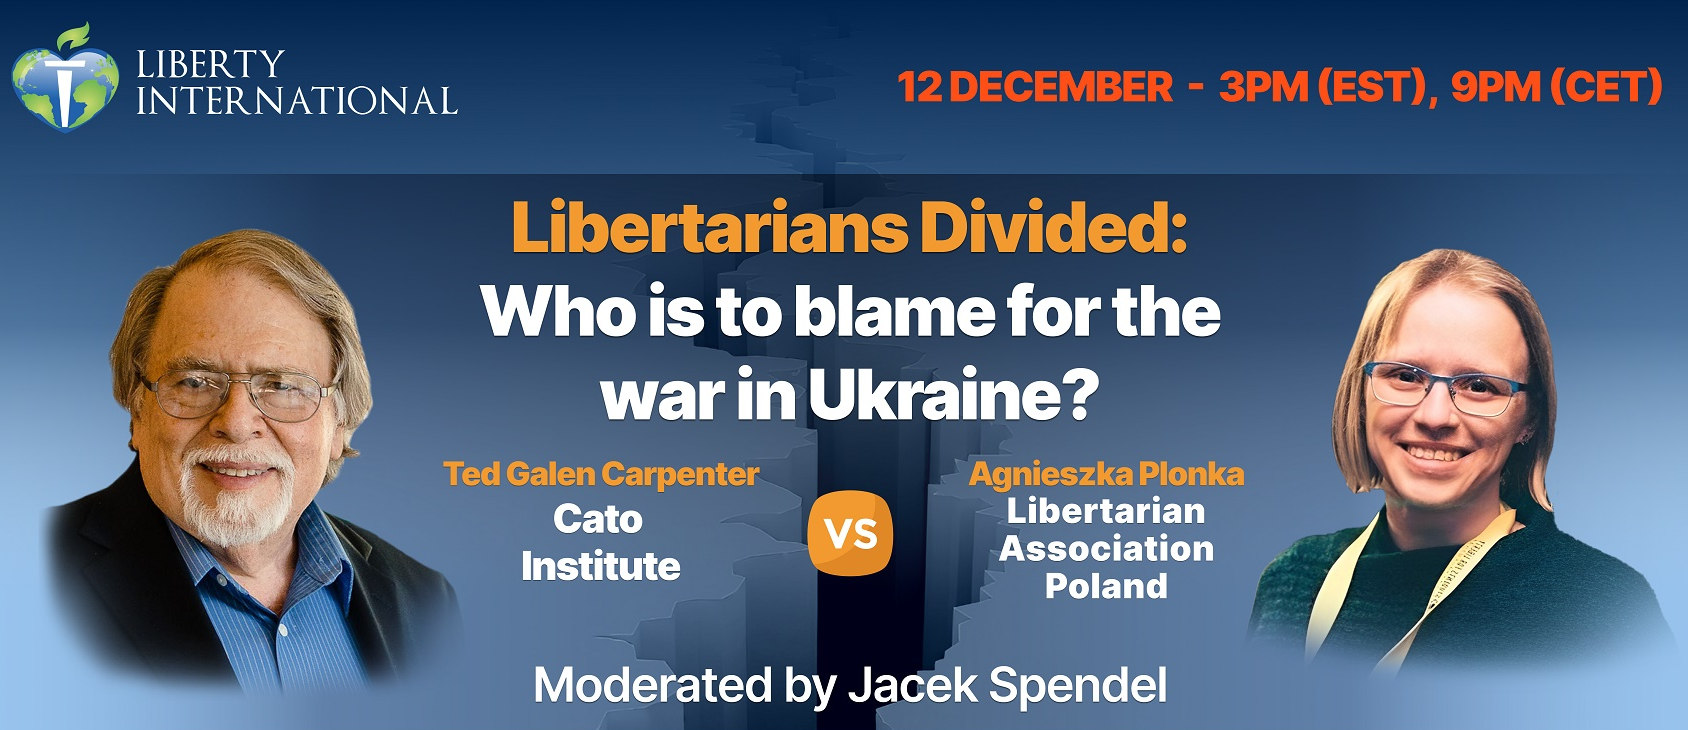 Kto jest odpowiedzialny za wojnę w Ukrainie? Debata na żywo już 12 grudnia!